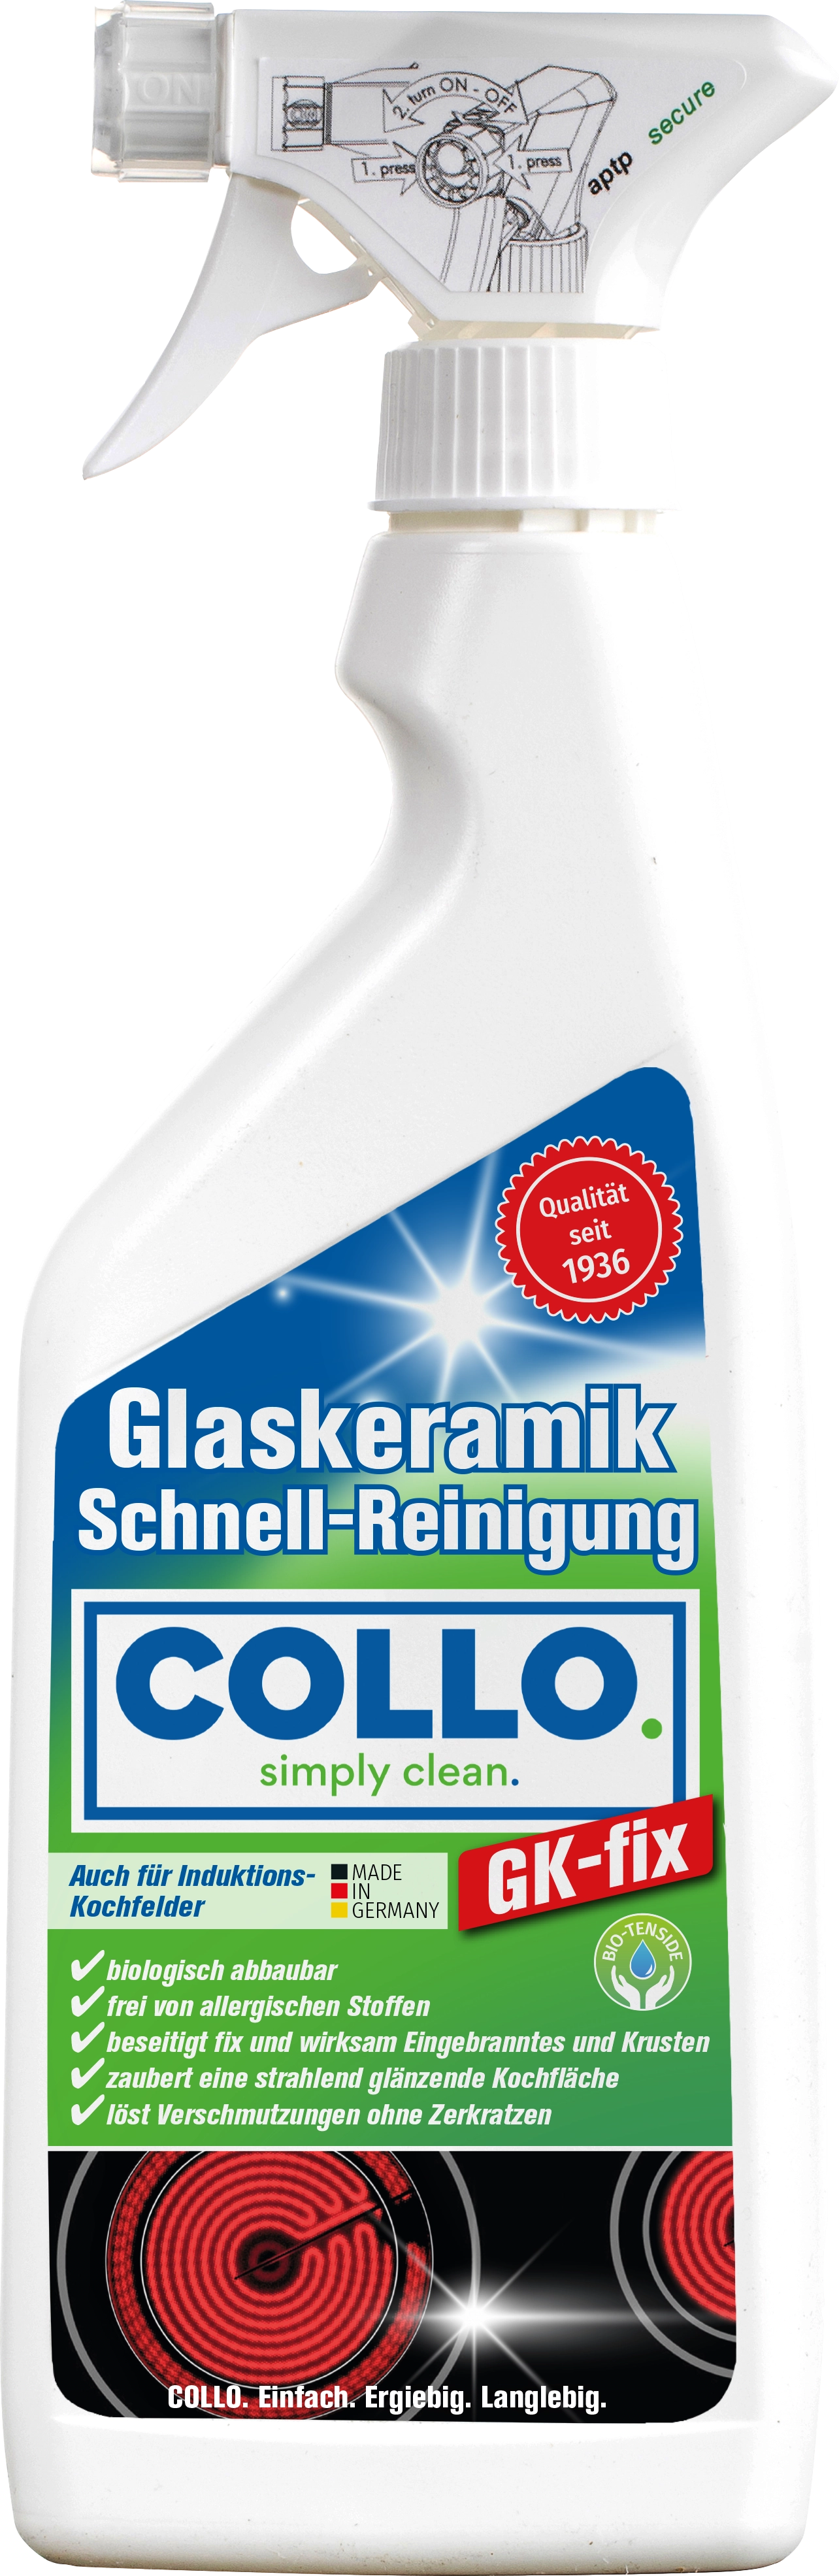 GK-FIX GLASKERAMIK SCHNELLREINIGER - Strahlende Reinigung für Glaskeramikoberflächen